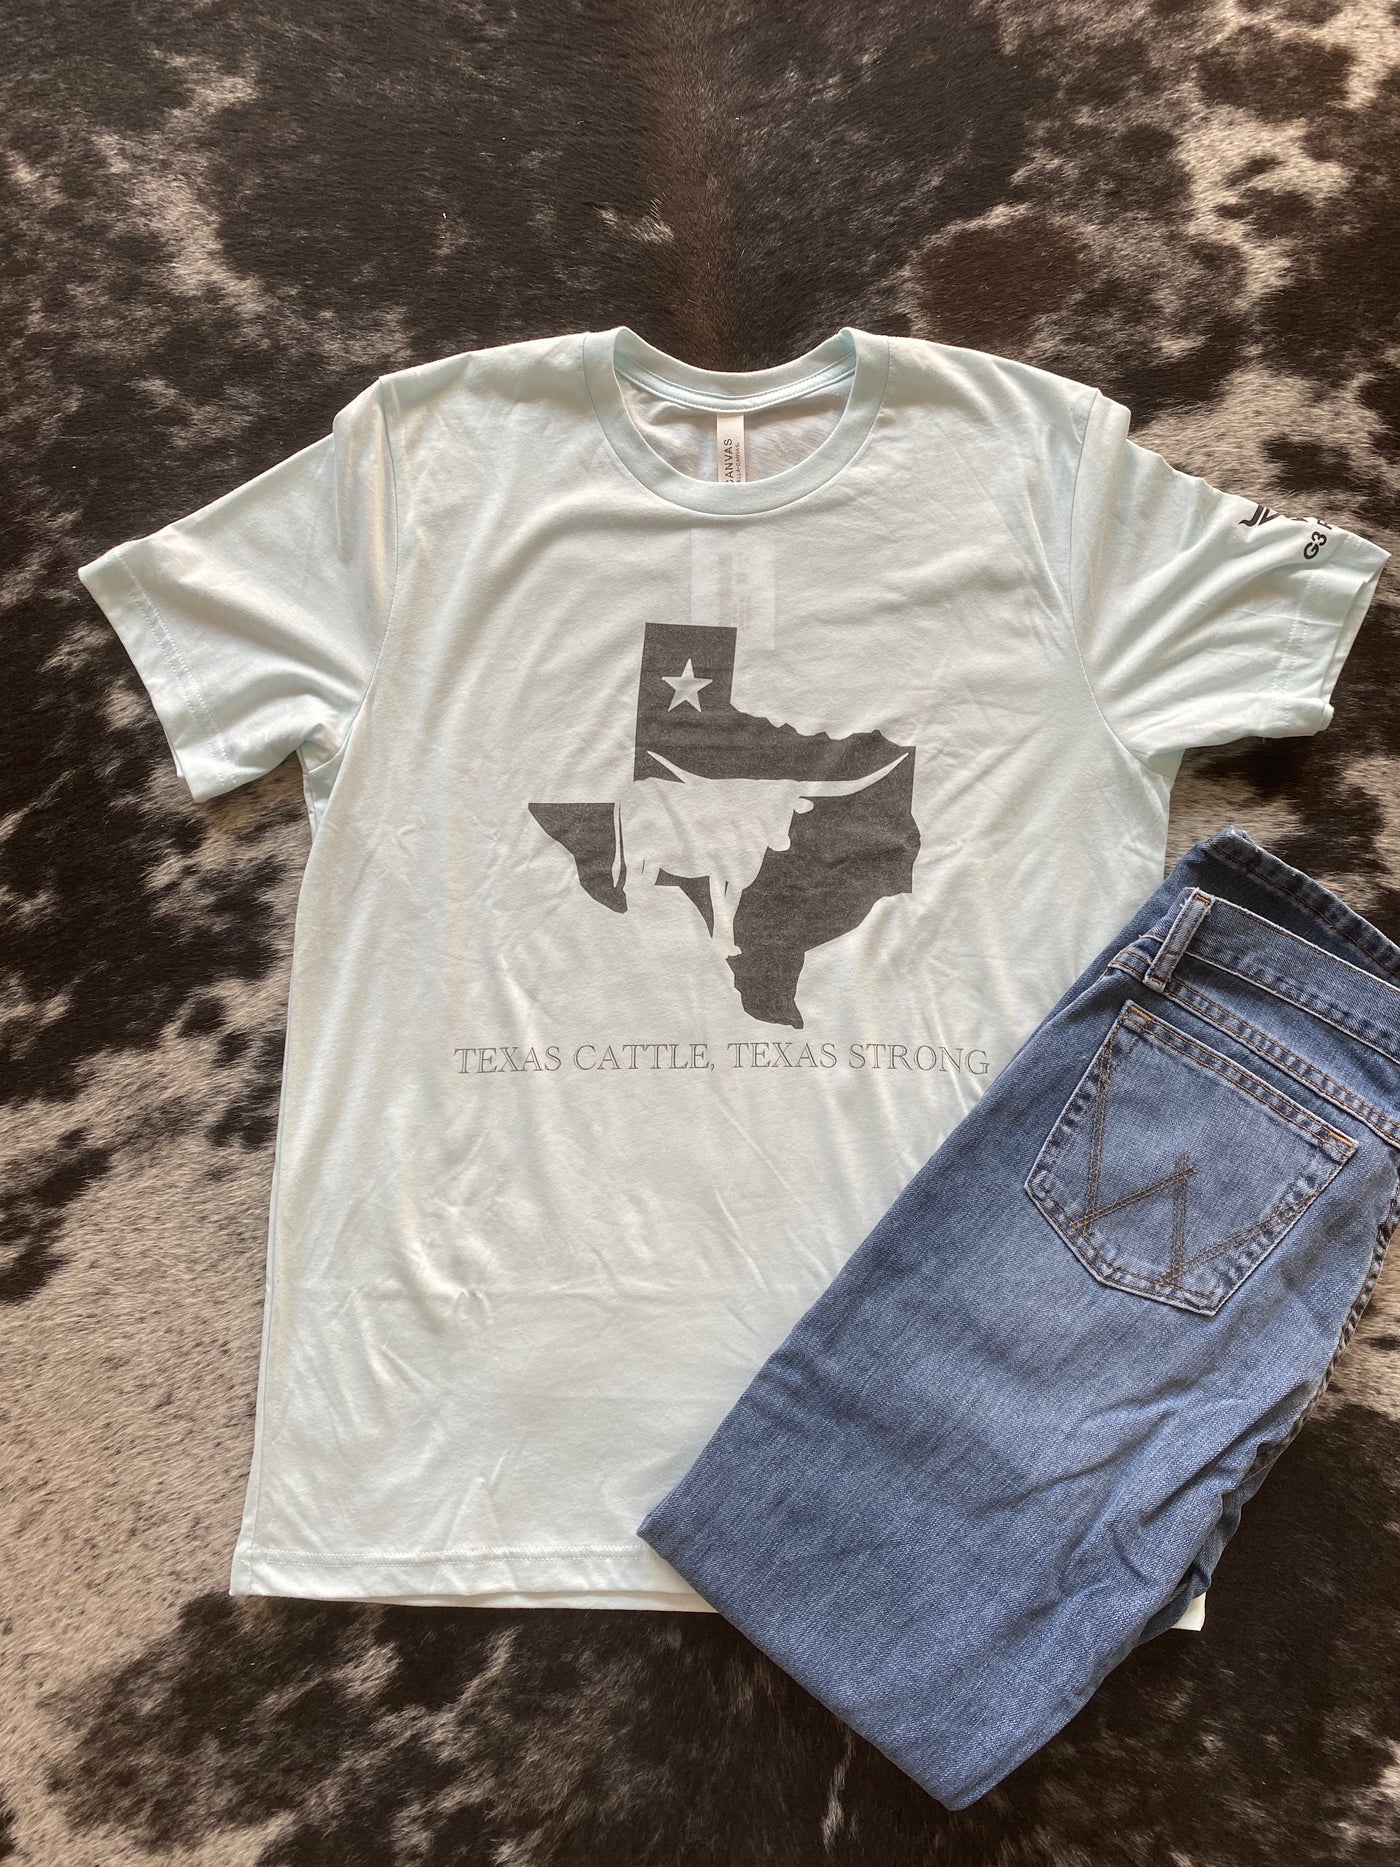 G3 Texas Cattle, Texas Strong T-Shirt